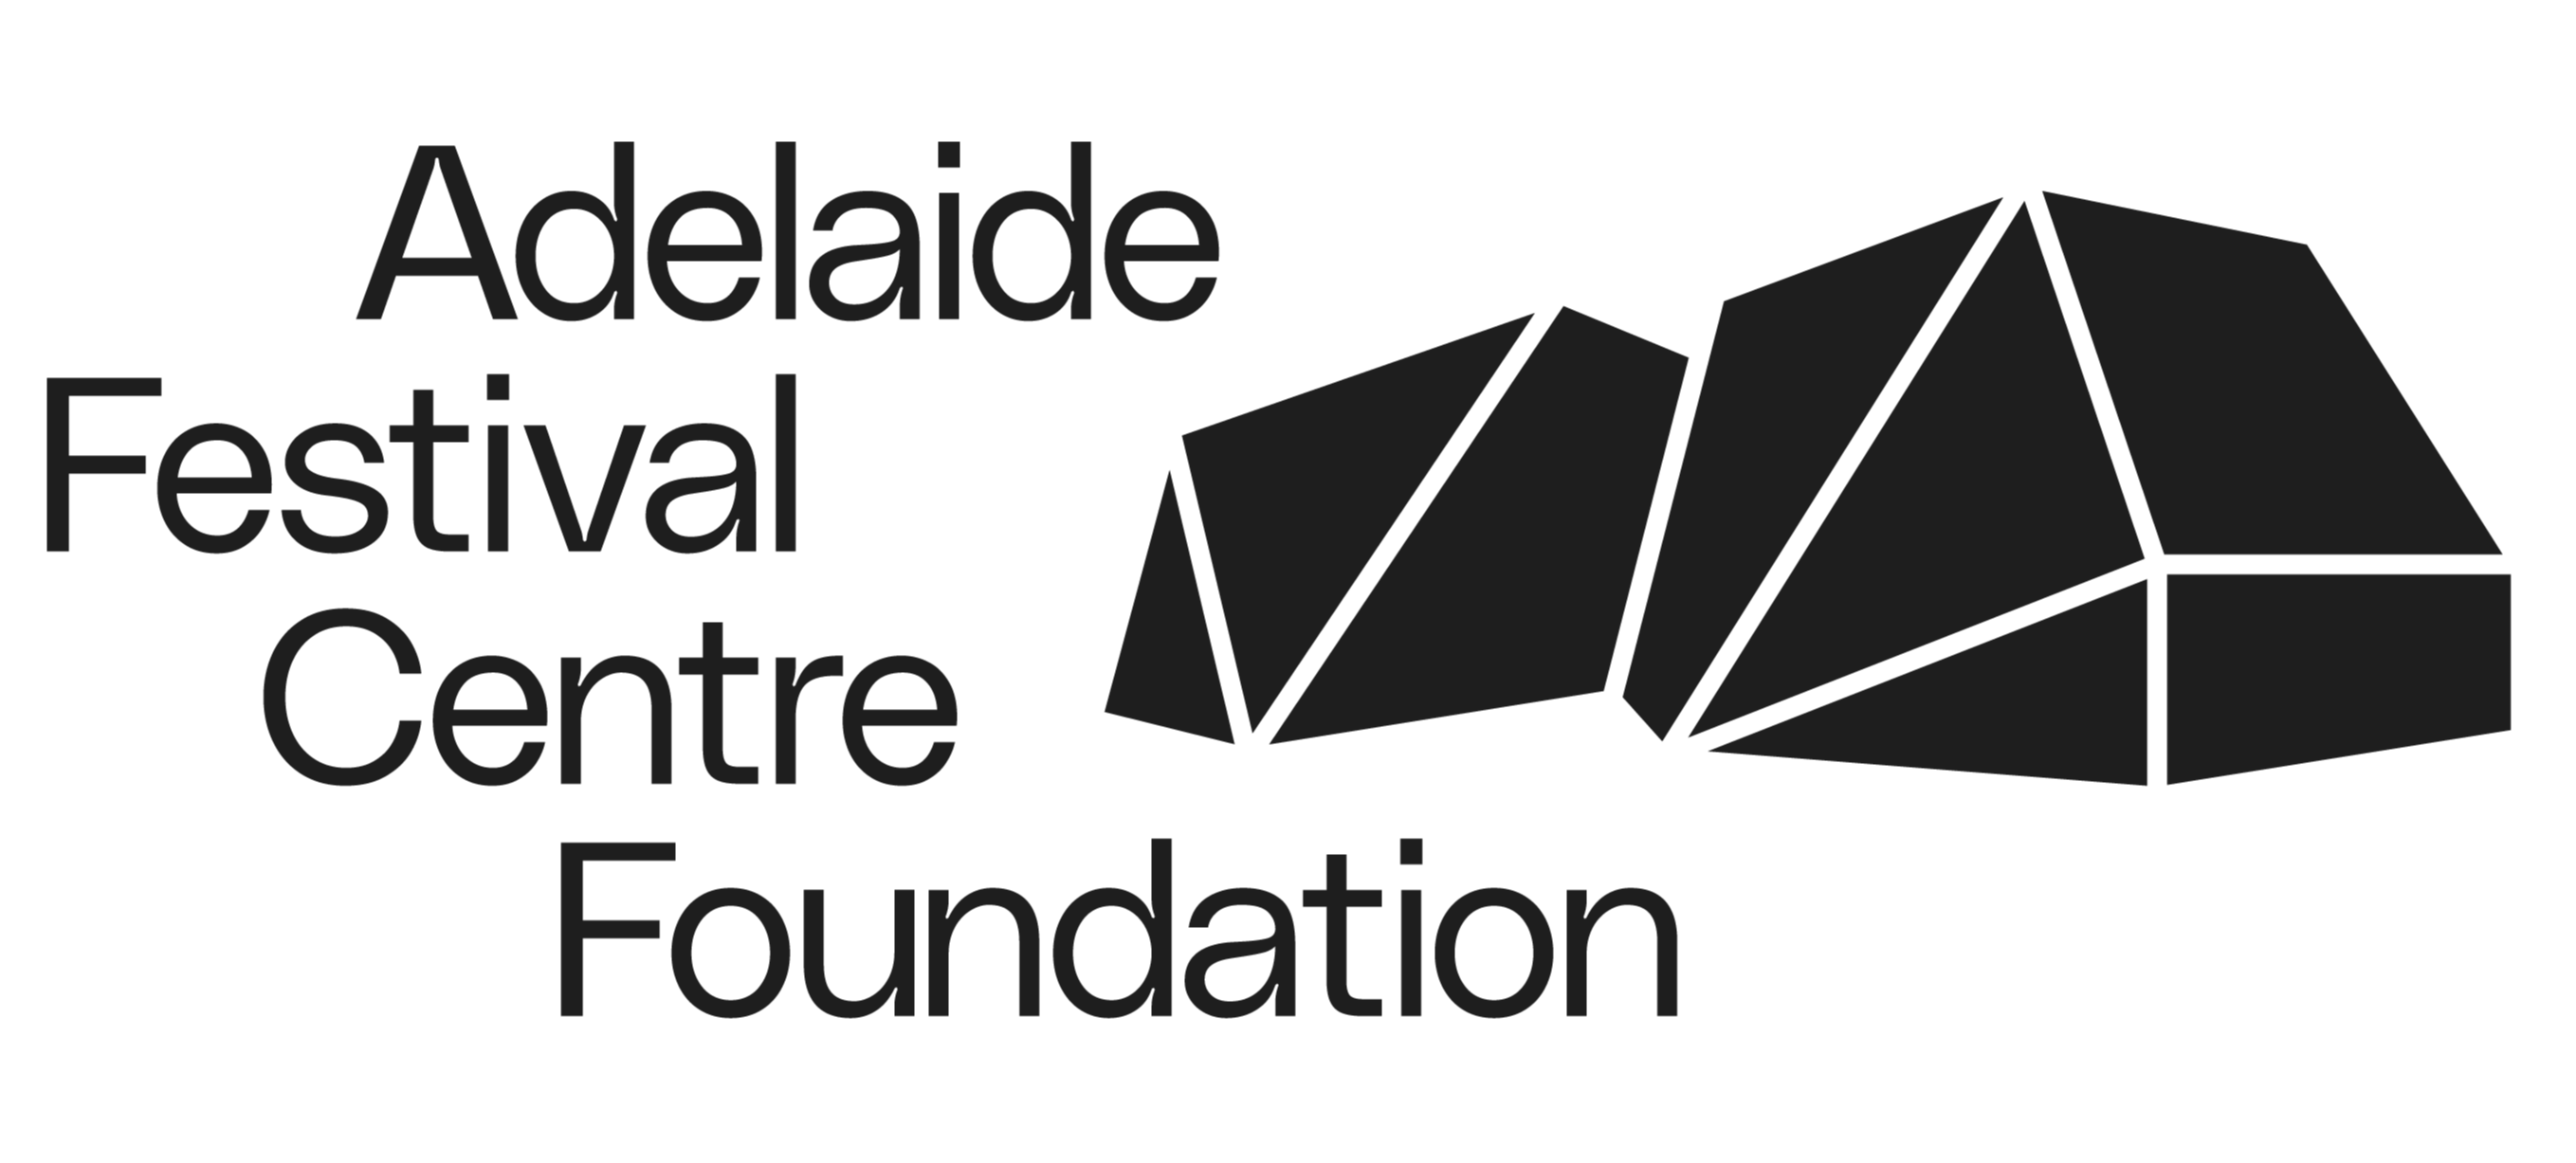 Adelaide Festival Centre Foundation logo